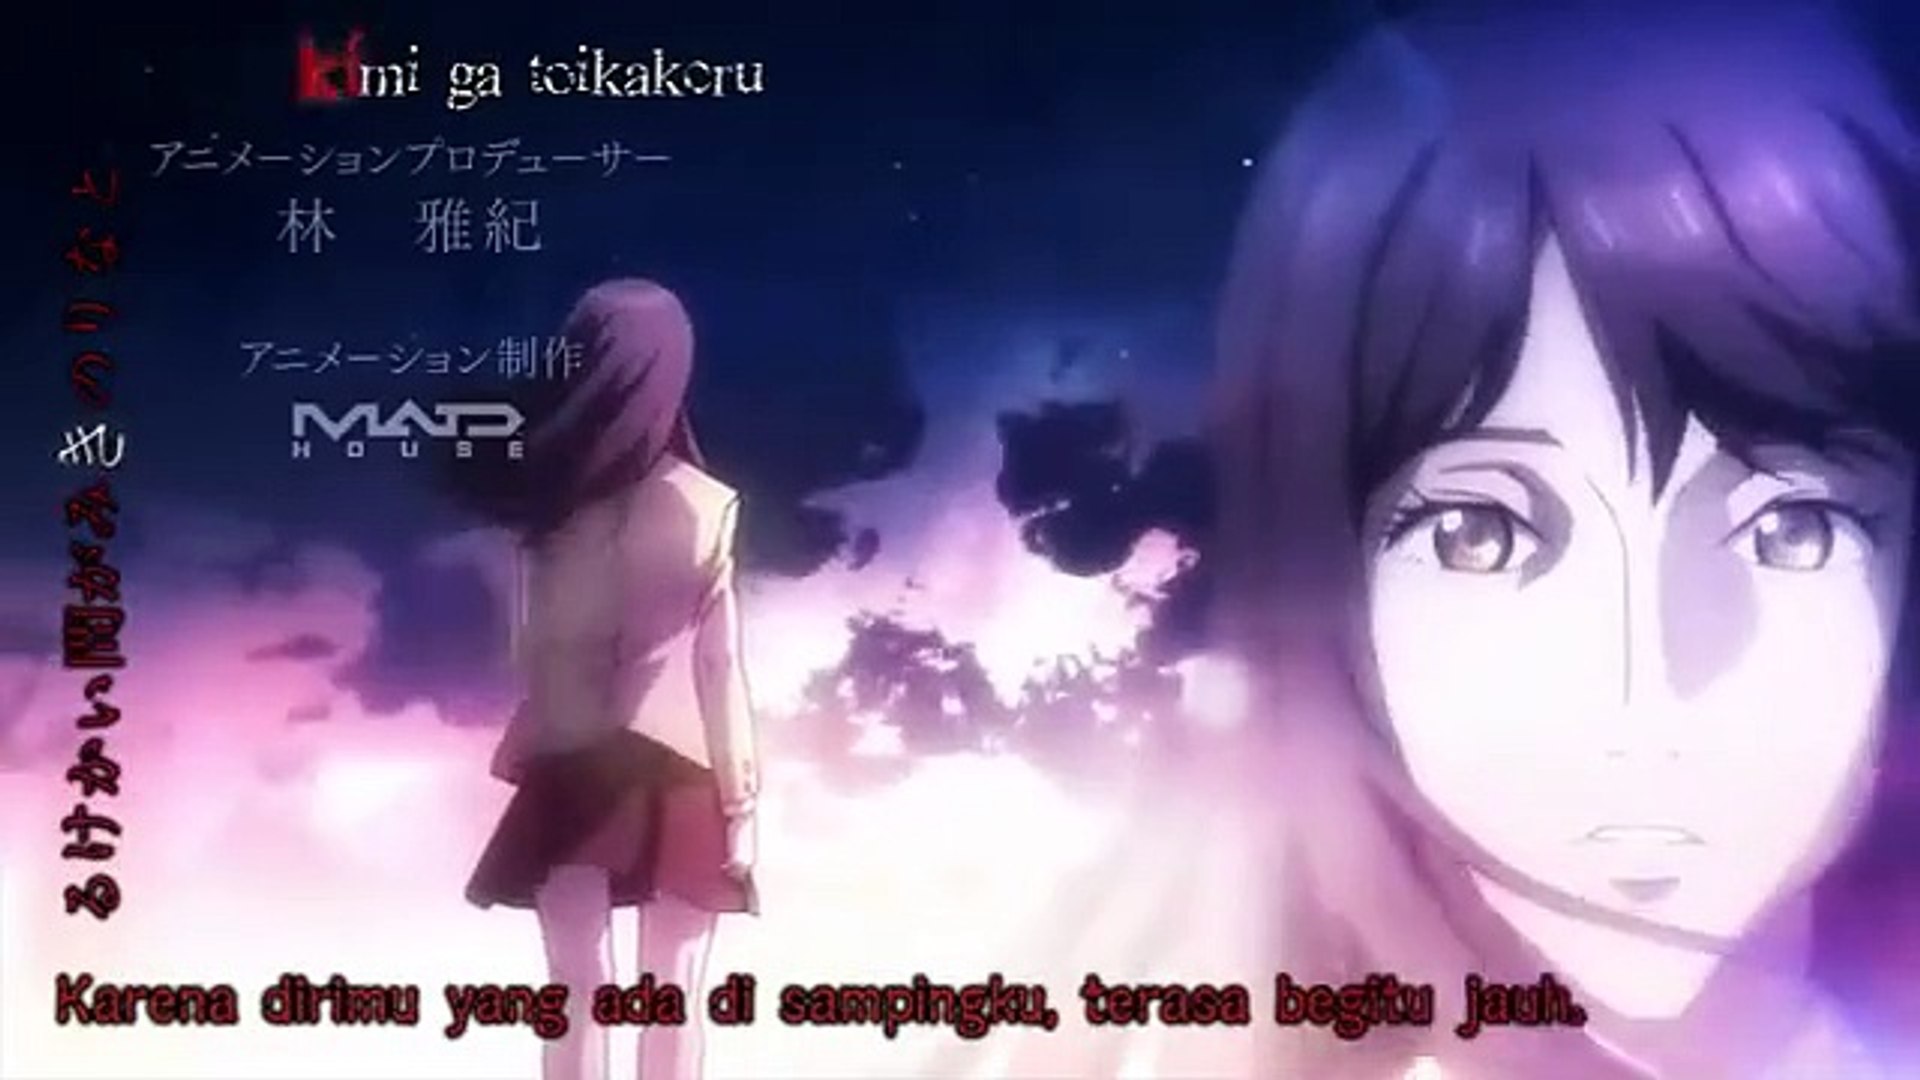 Kiseijuu Sei no Kakuritsu Episode 1 Subtitle Indonesia - Otaku Desu - video  Dailymotion